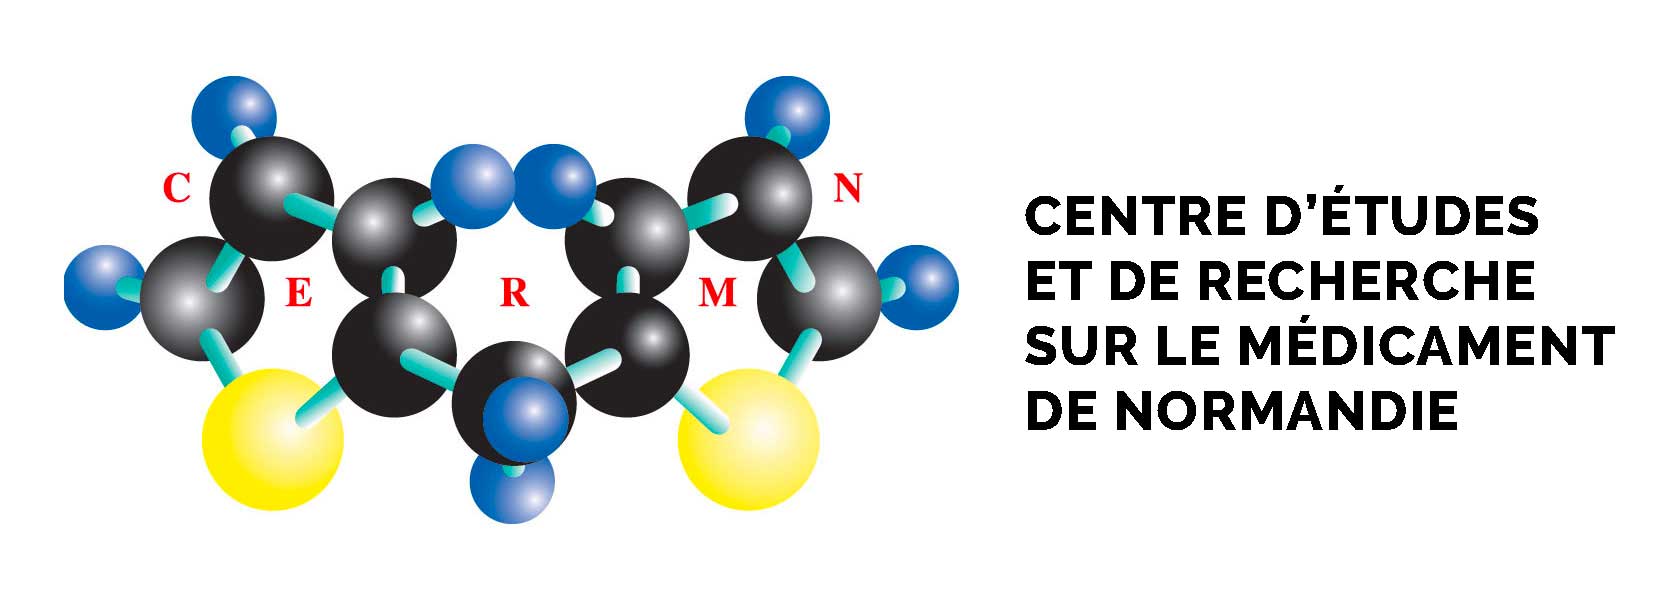 Centre d’études et de recherche sur le médicament de Normandie - Logo